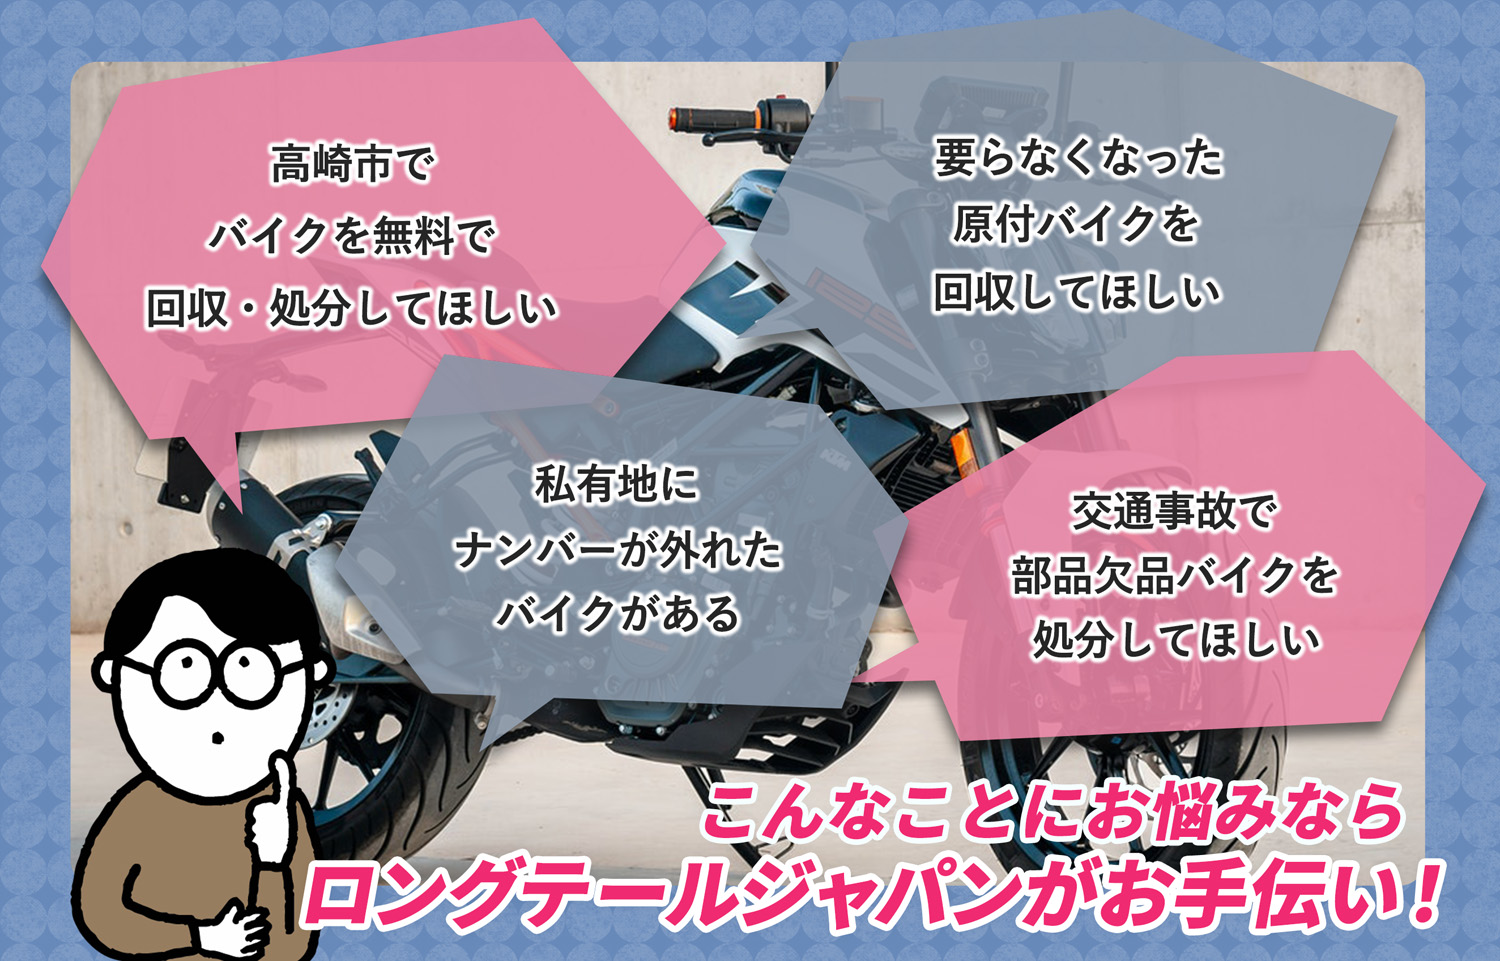 高崎市でこんなバイクの処分にお困りでしたらバイク無料回収処分隊がお手伝いいたします。